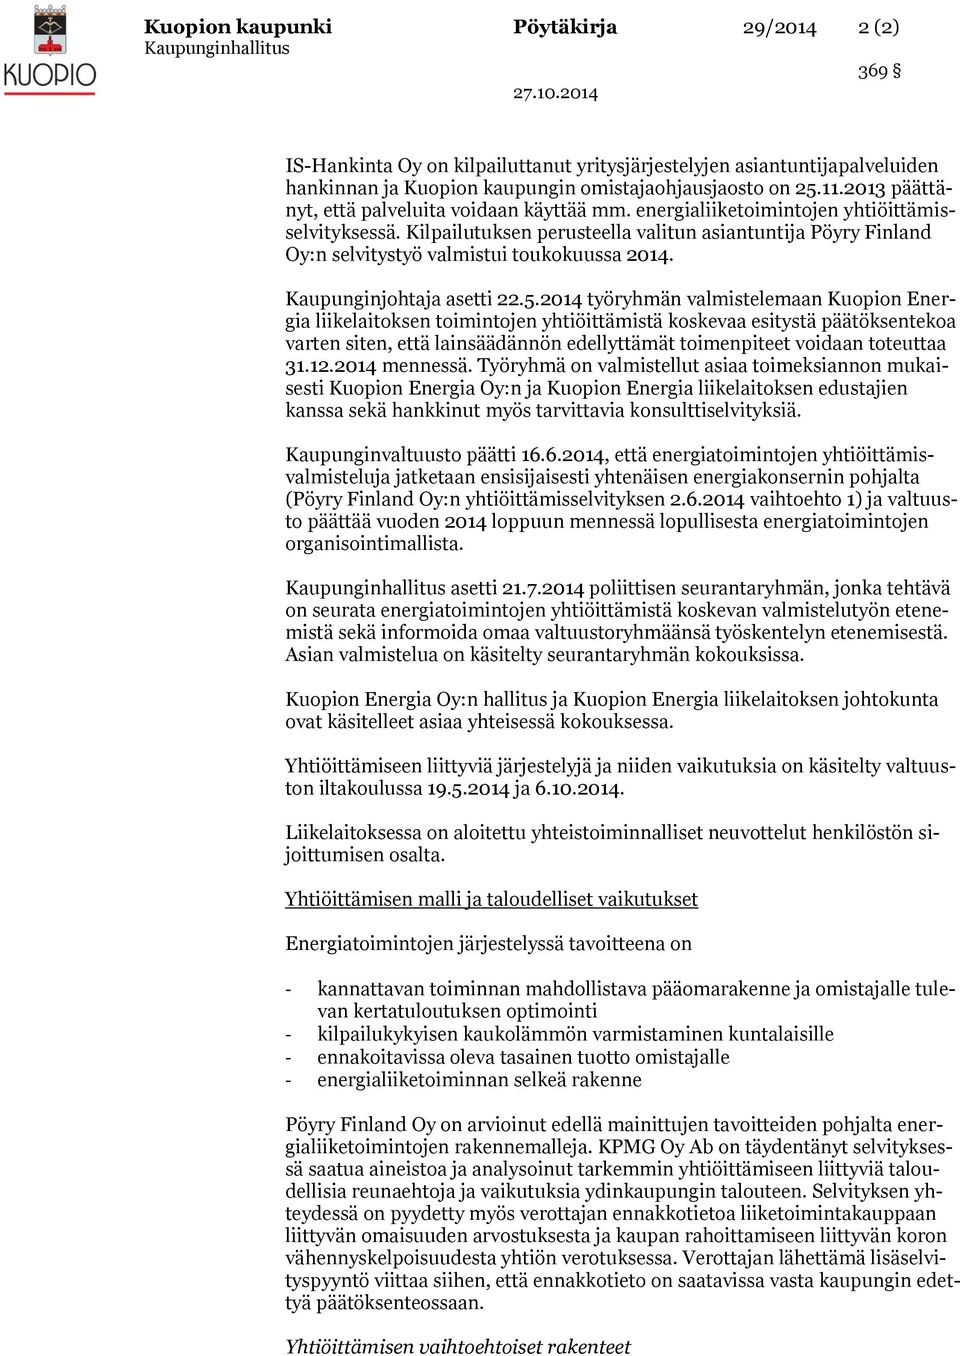 Kilpailutuksen perusteella valitun asiantuntija Pöyry Finland Oy:n selvitystyö valmistui toukokuussa 2014. Kaupunginjohtaja asetti 22.5.